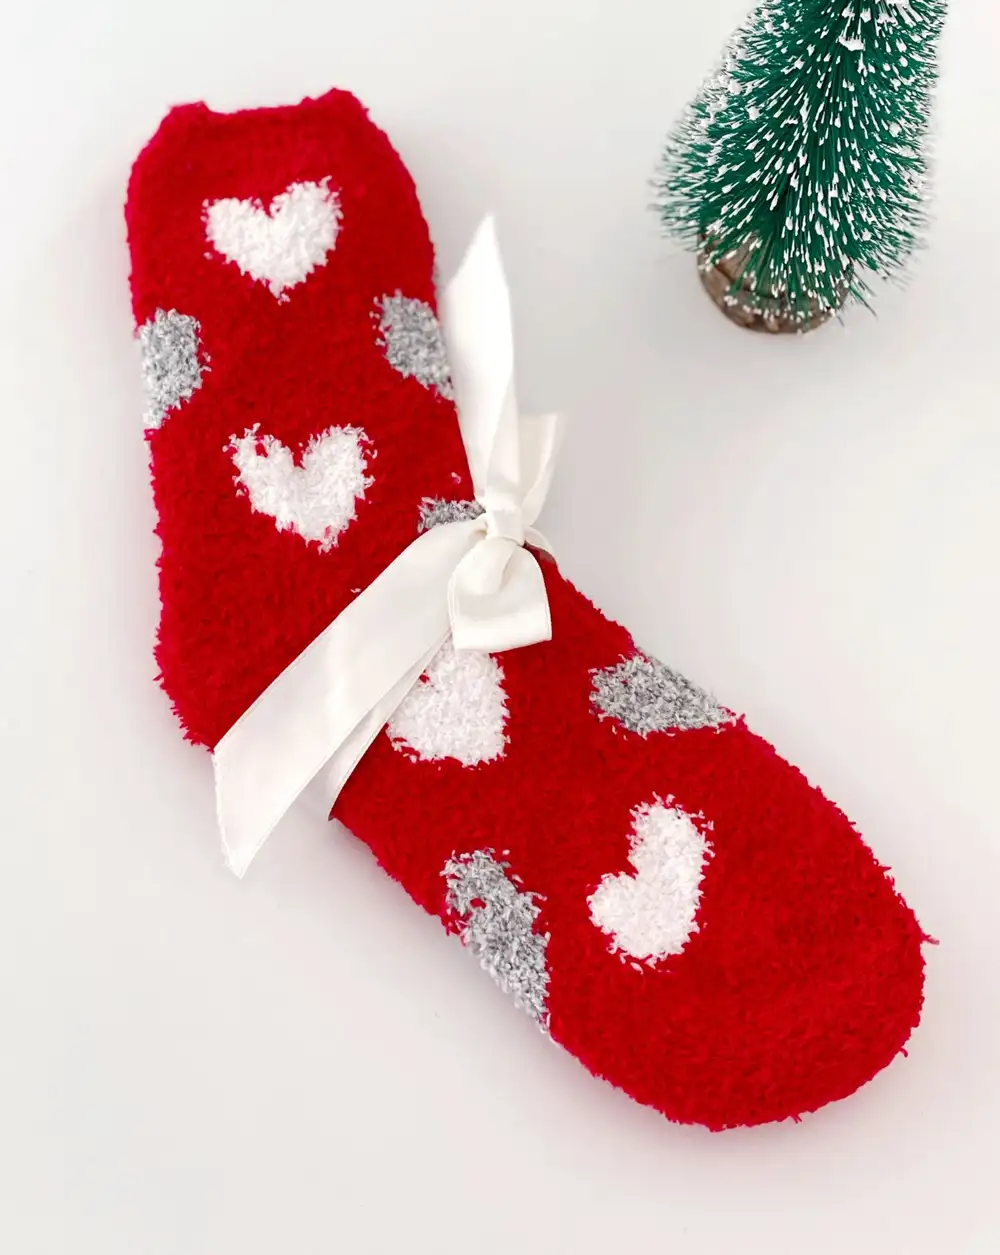 Çorap N009 - Bolero Home Socks Kırmızı Kalp Desenli Ev Çorabı Kışlık Çorap